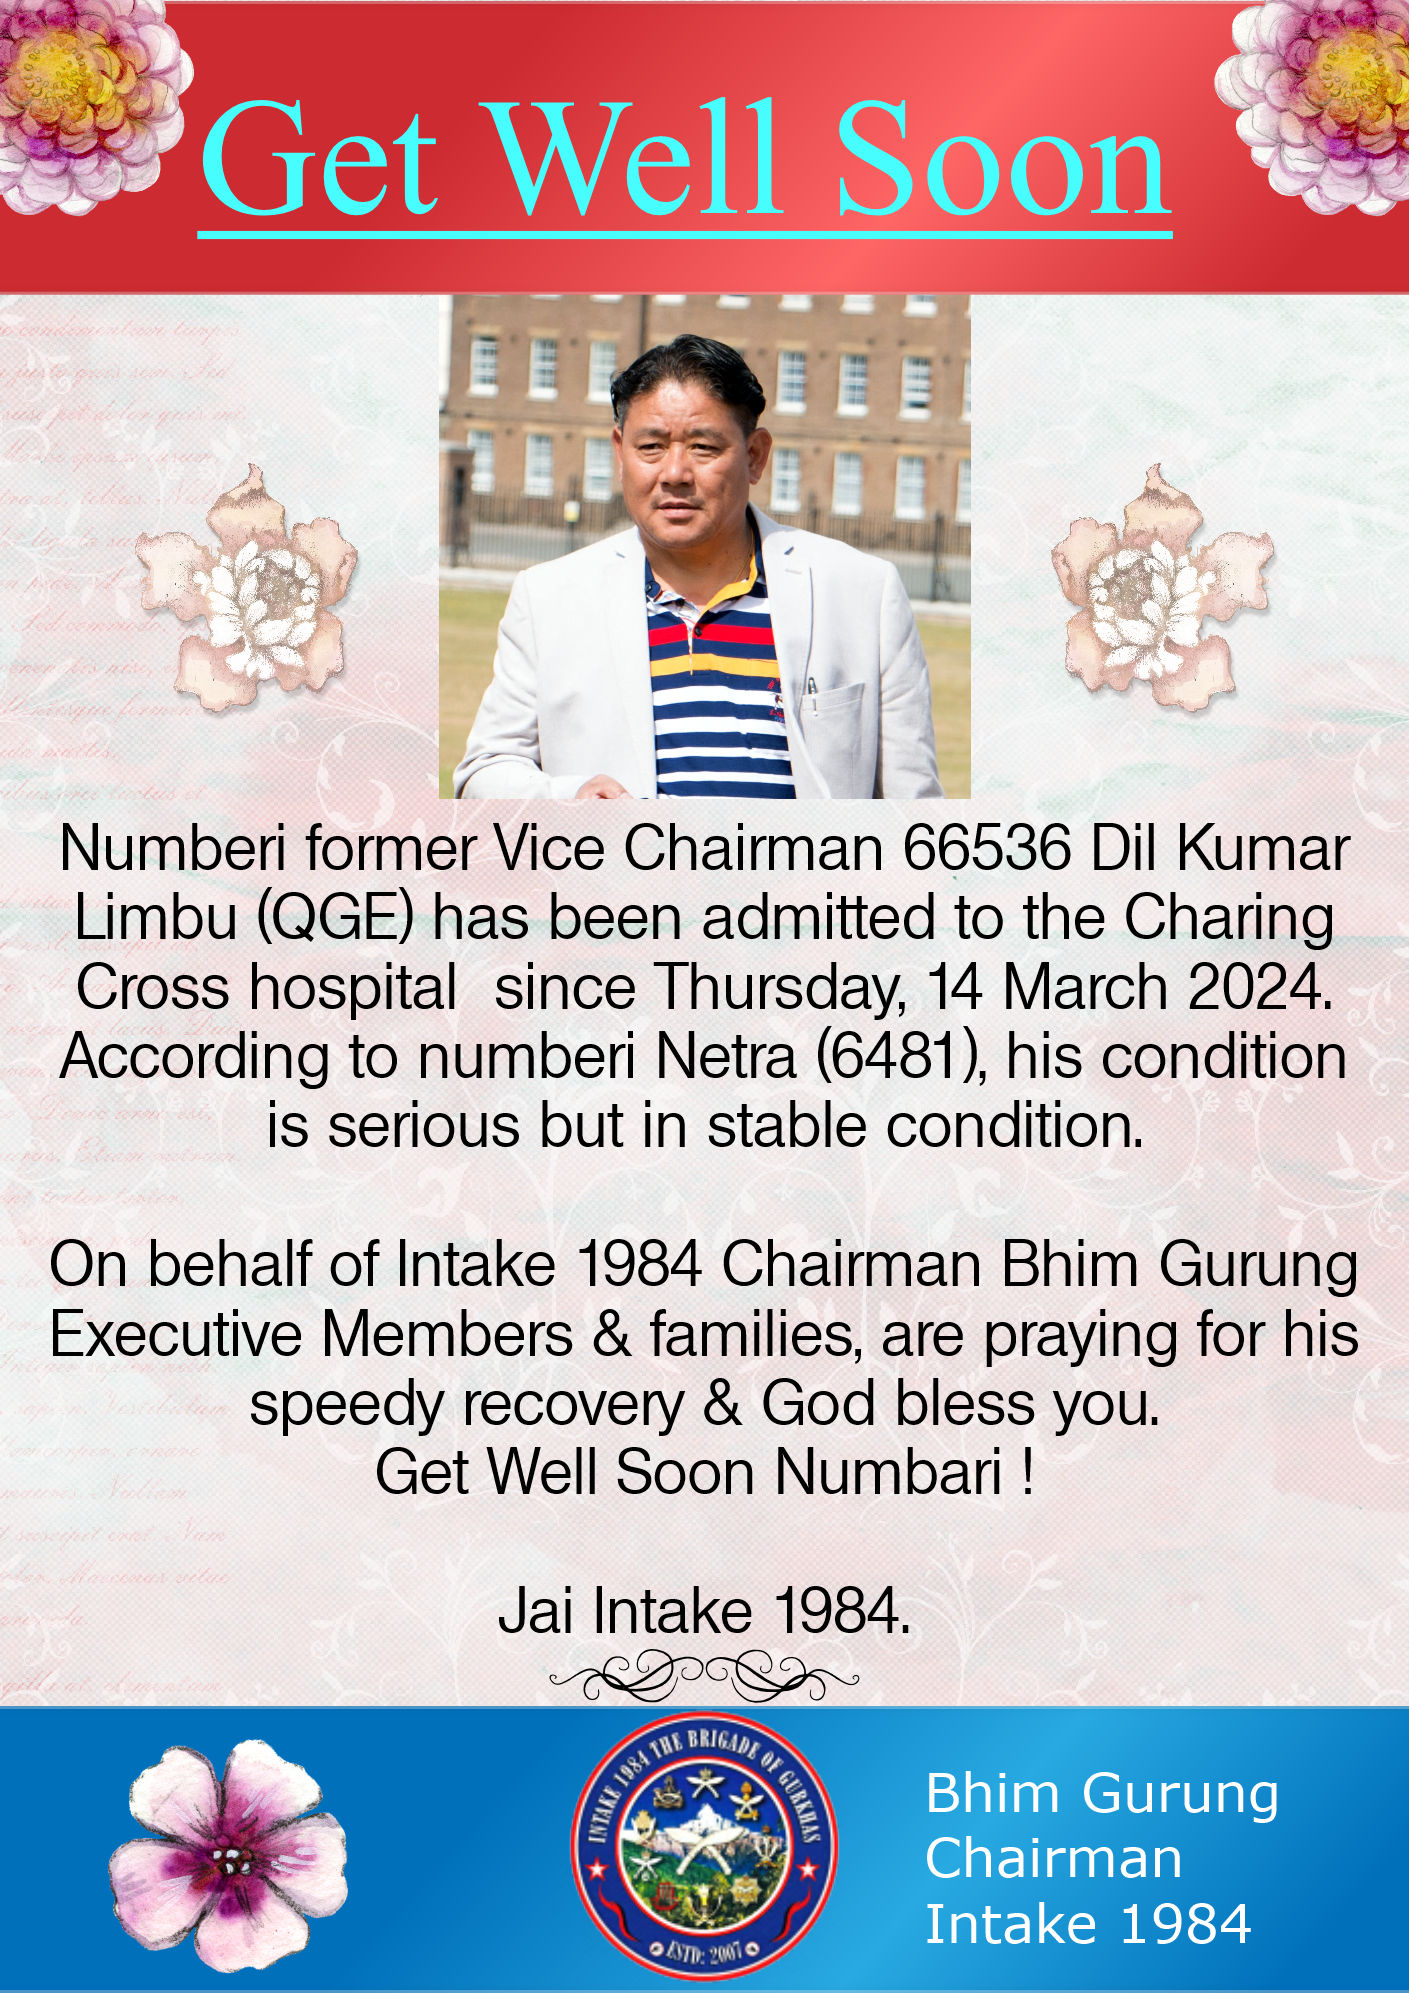 Get well soon - 66536 Dil Kmr Limbu (QGE)